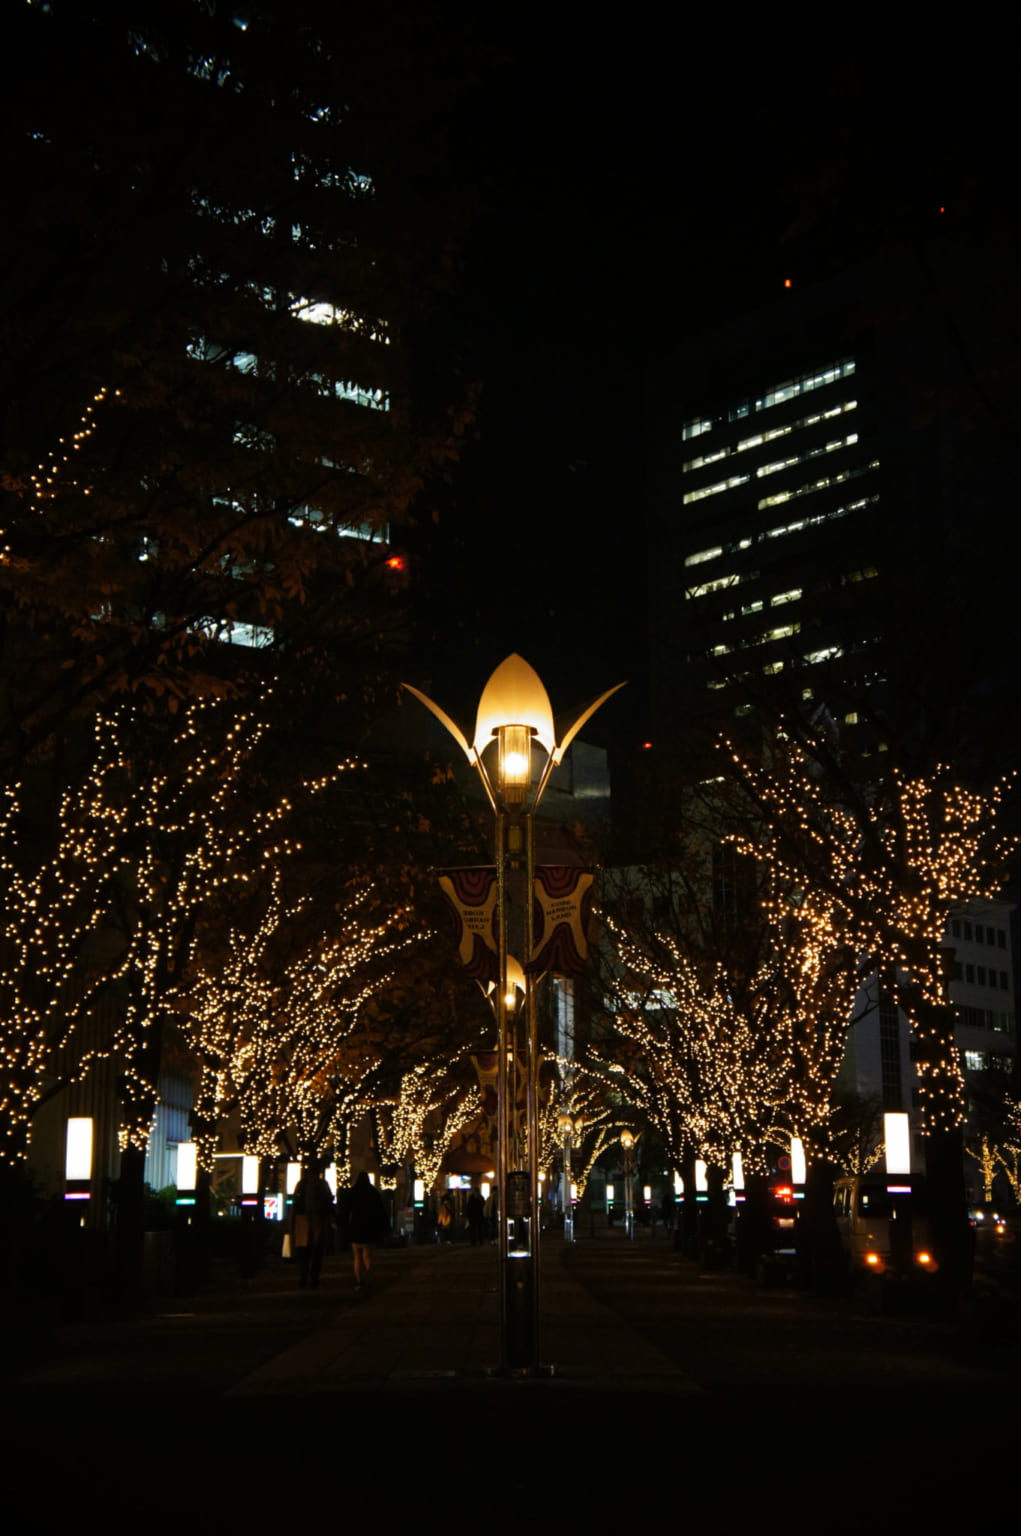 gaslight and illuminations on Gaslight Street in Kobe